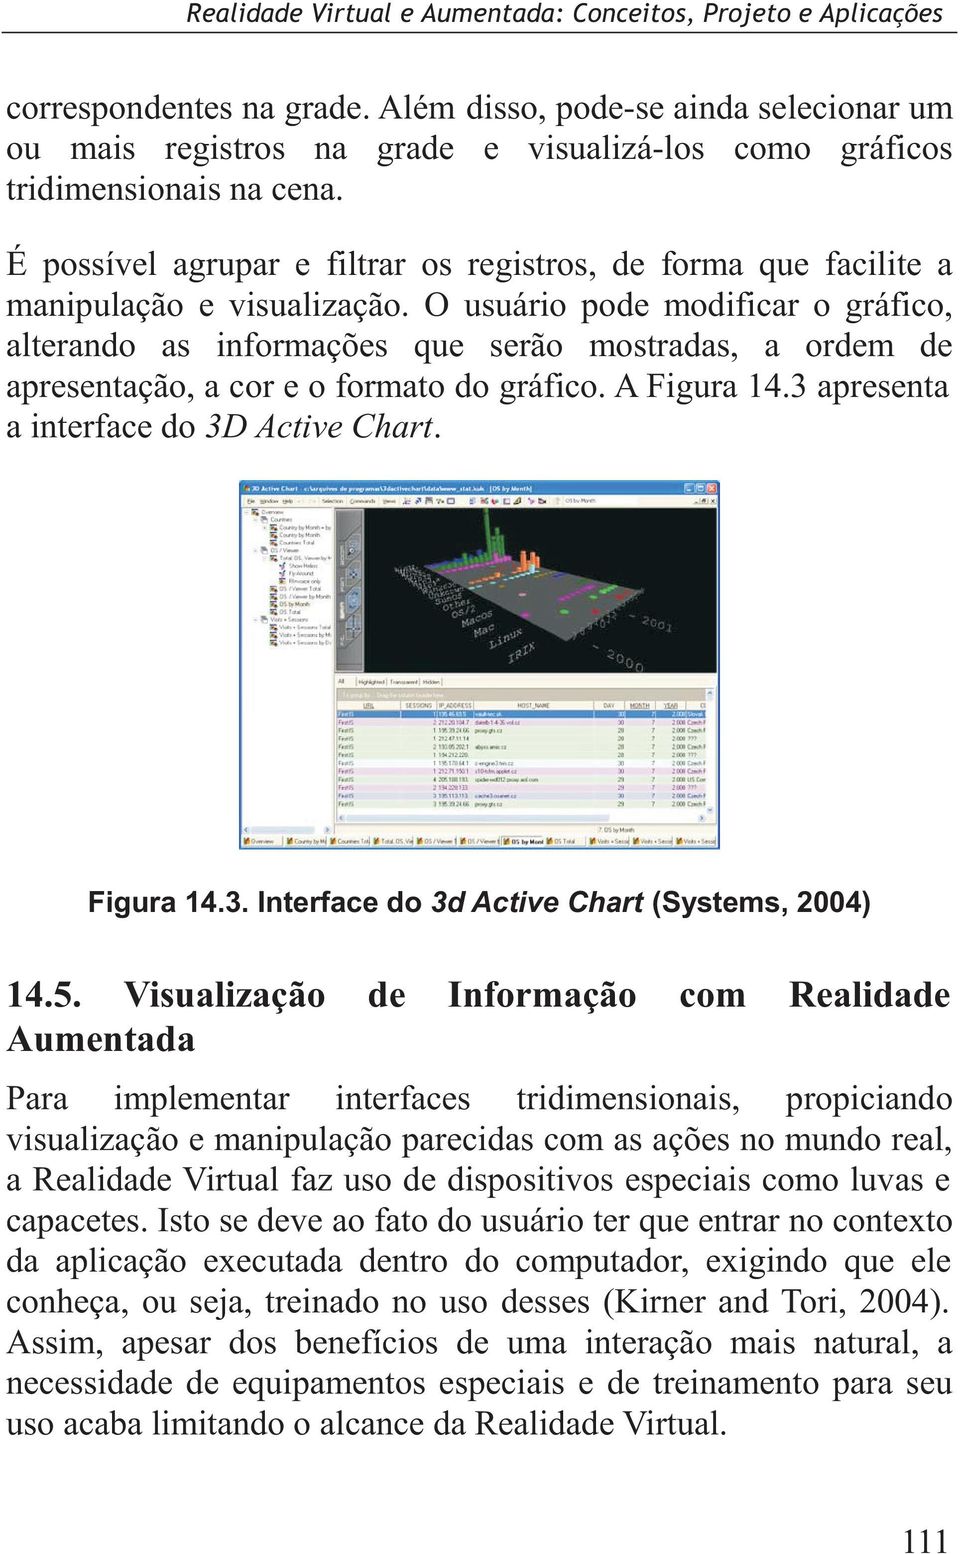 O usuário pode modificar o gráfico, alterando as informações que serão mostradas, a ordem de apresentação, a cor e o formato do gráfico. A Figura 14.3 apresenta a interface do 3D Active Chart.